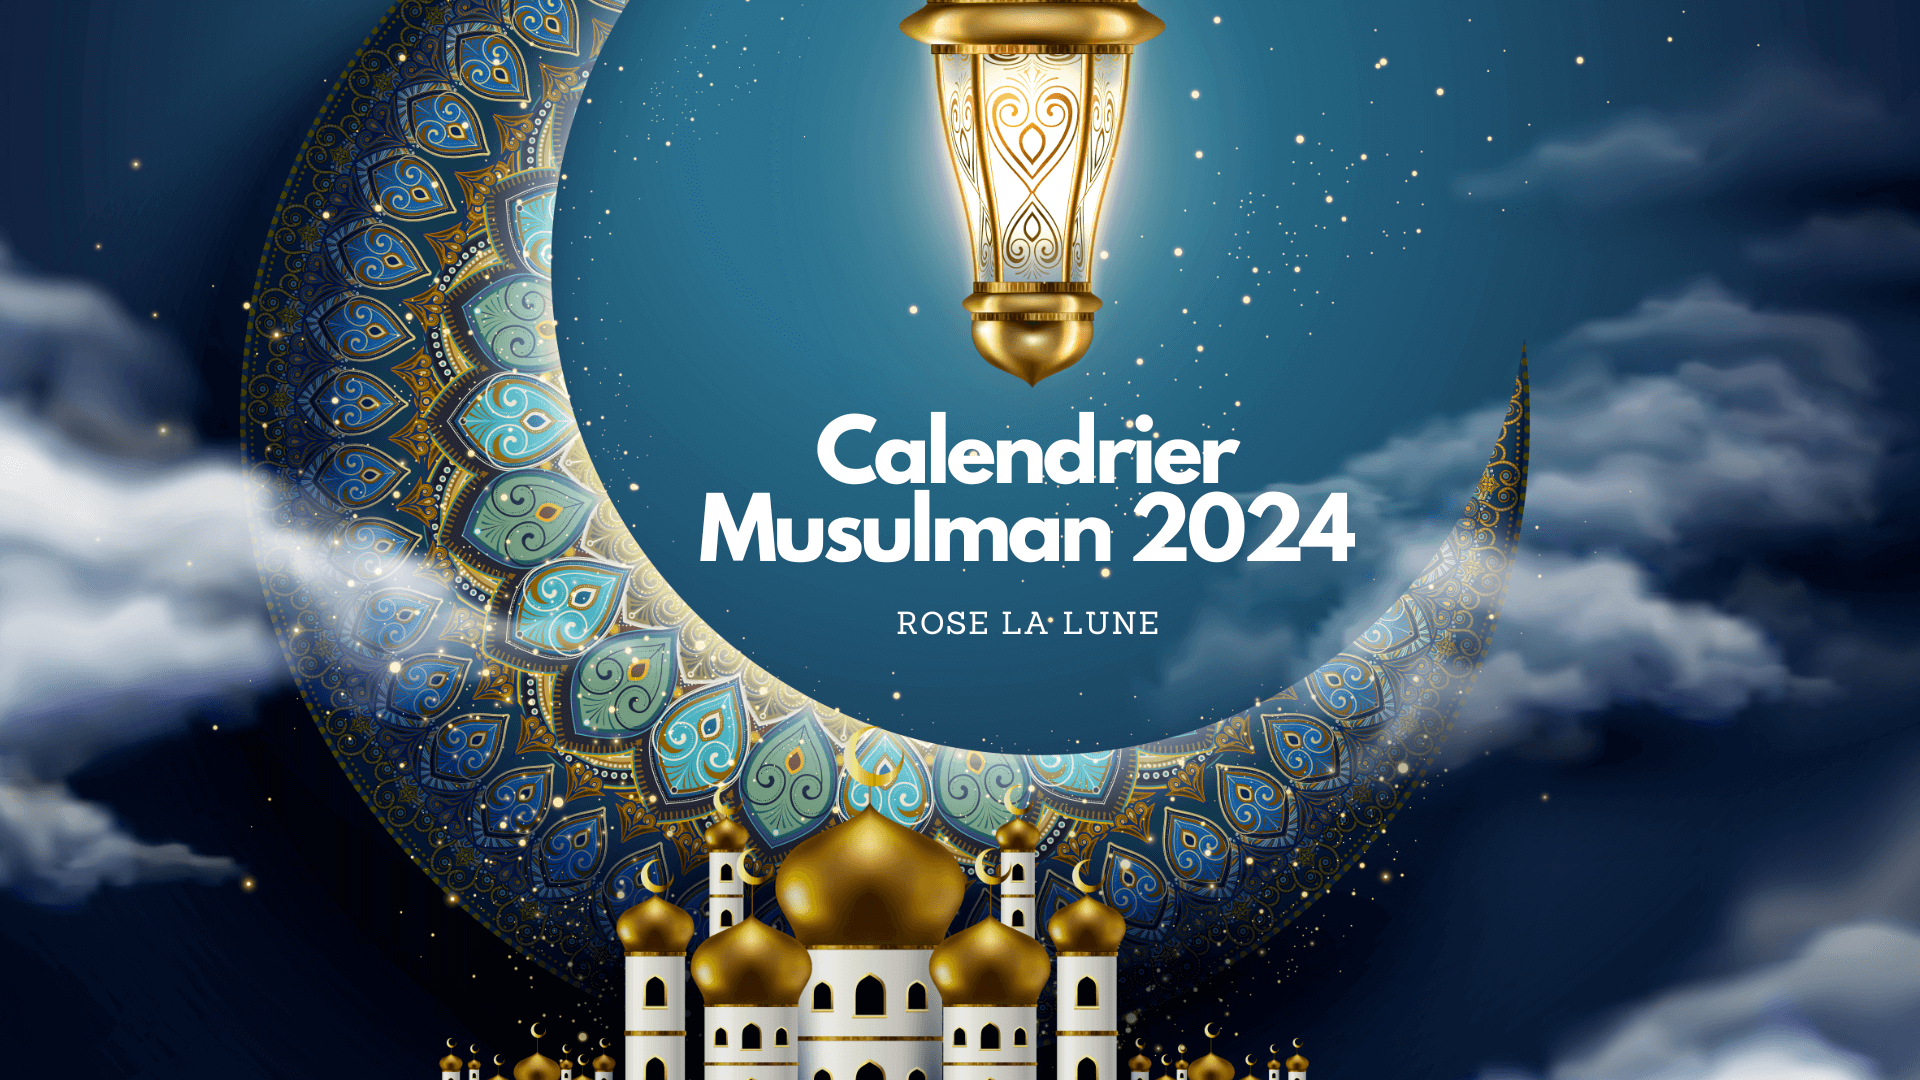 Calendrier Musulman 2024 le rôle de la Lune Rose La Lune